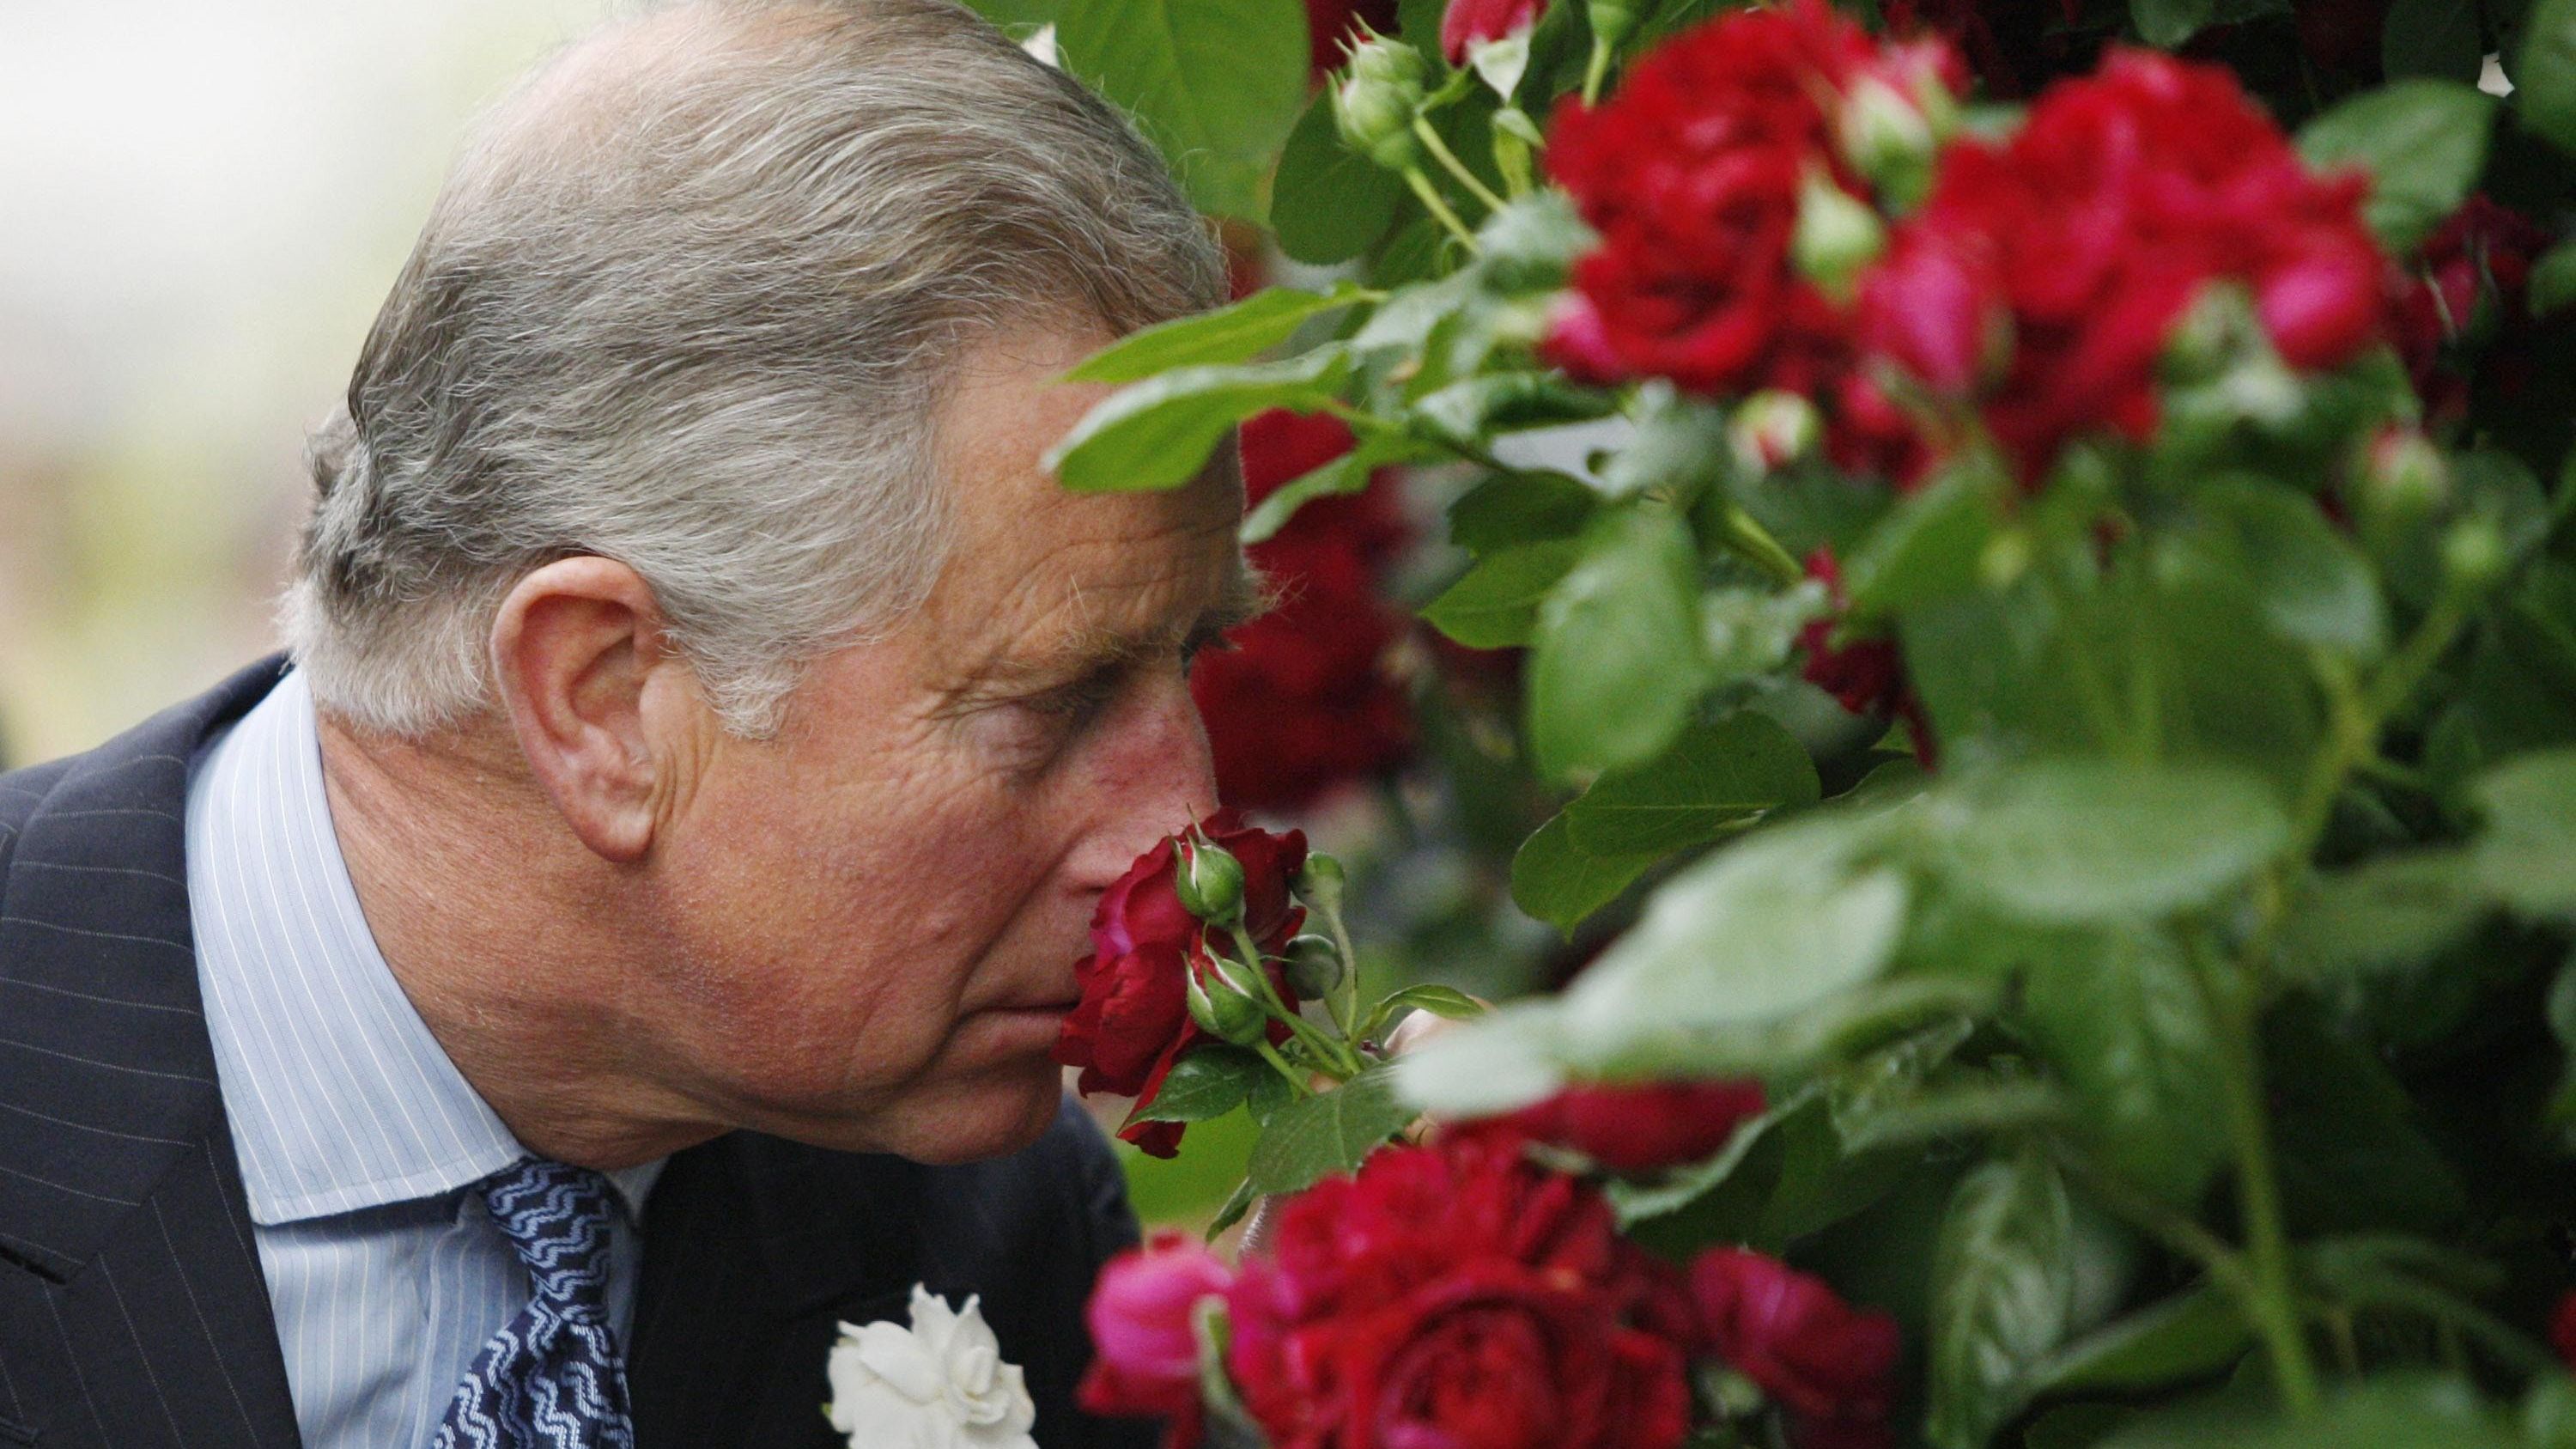 Die jährliche Blumenshow in Chelsea, London, ist sicherlich ein Highlight der königlichen Verpflichtungen von Hobbygärtner Charles.